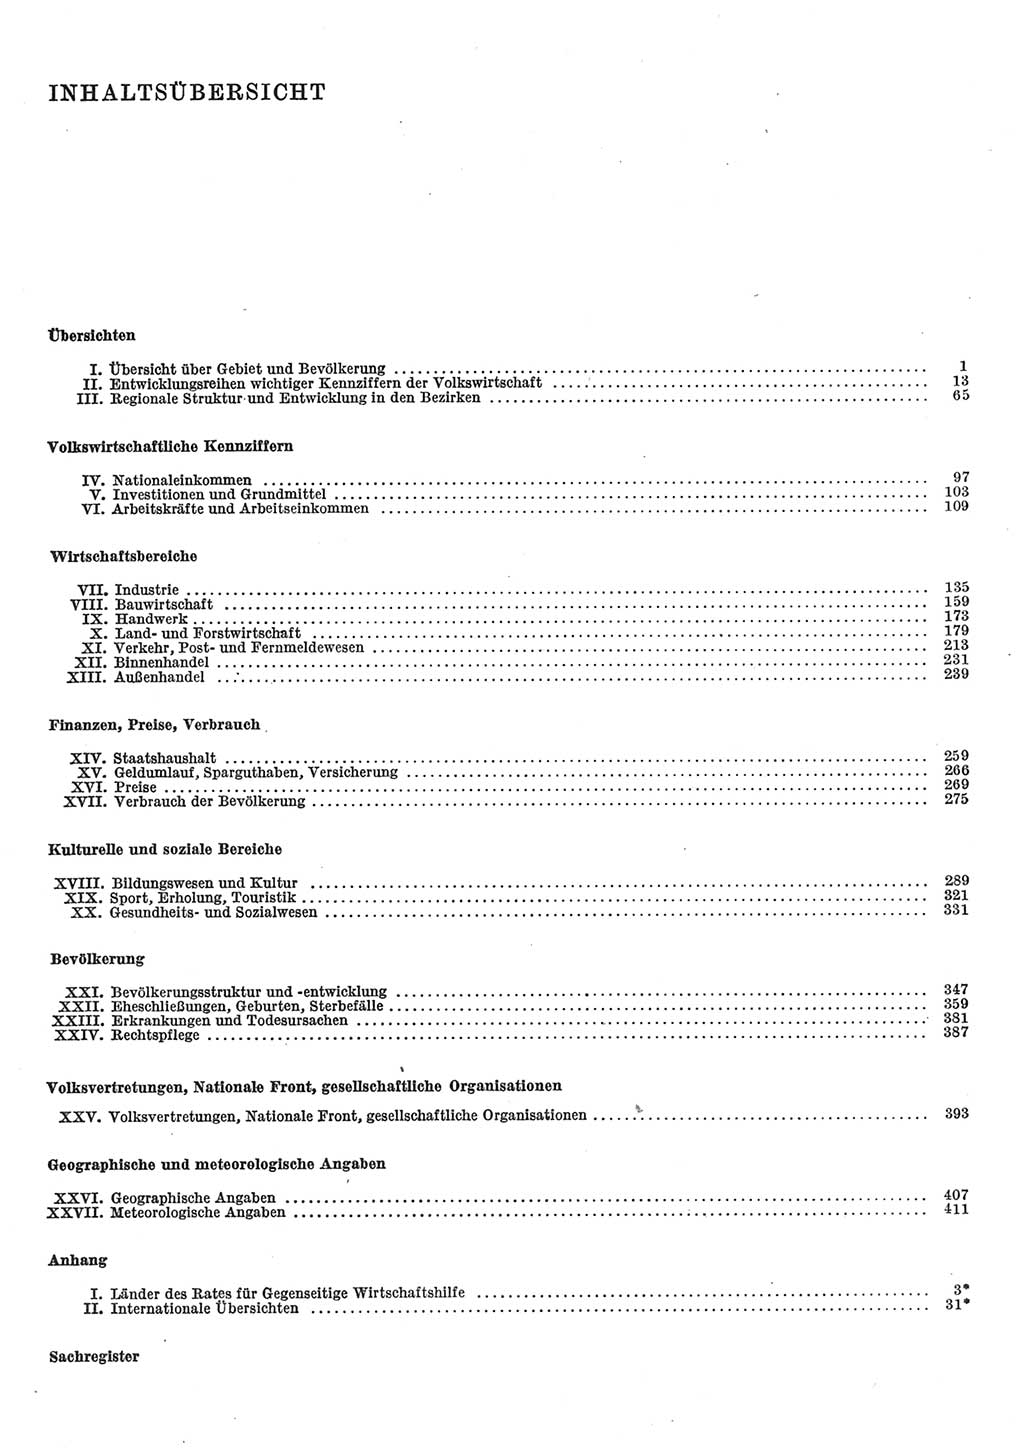 Statistisches Jahrbuch der Deutschen Demokratischen Republik (DDR) 1985, Seite 6 (Stat. Jb. DDR 1985, S. 6)